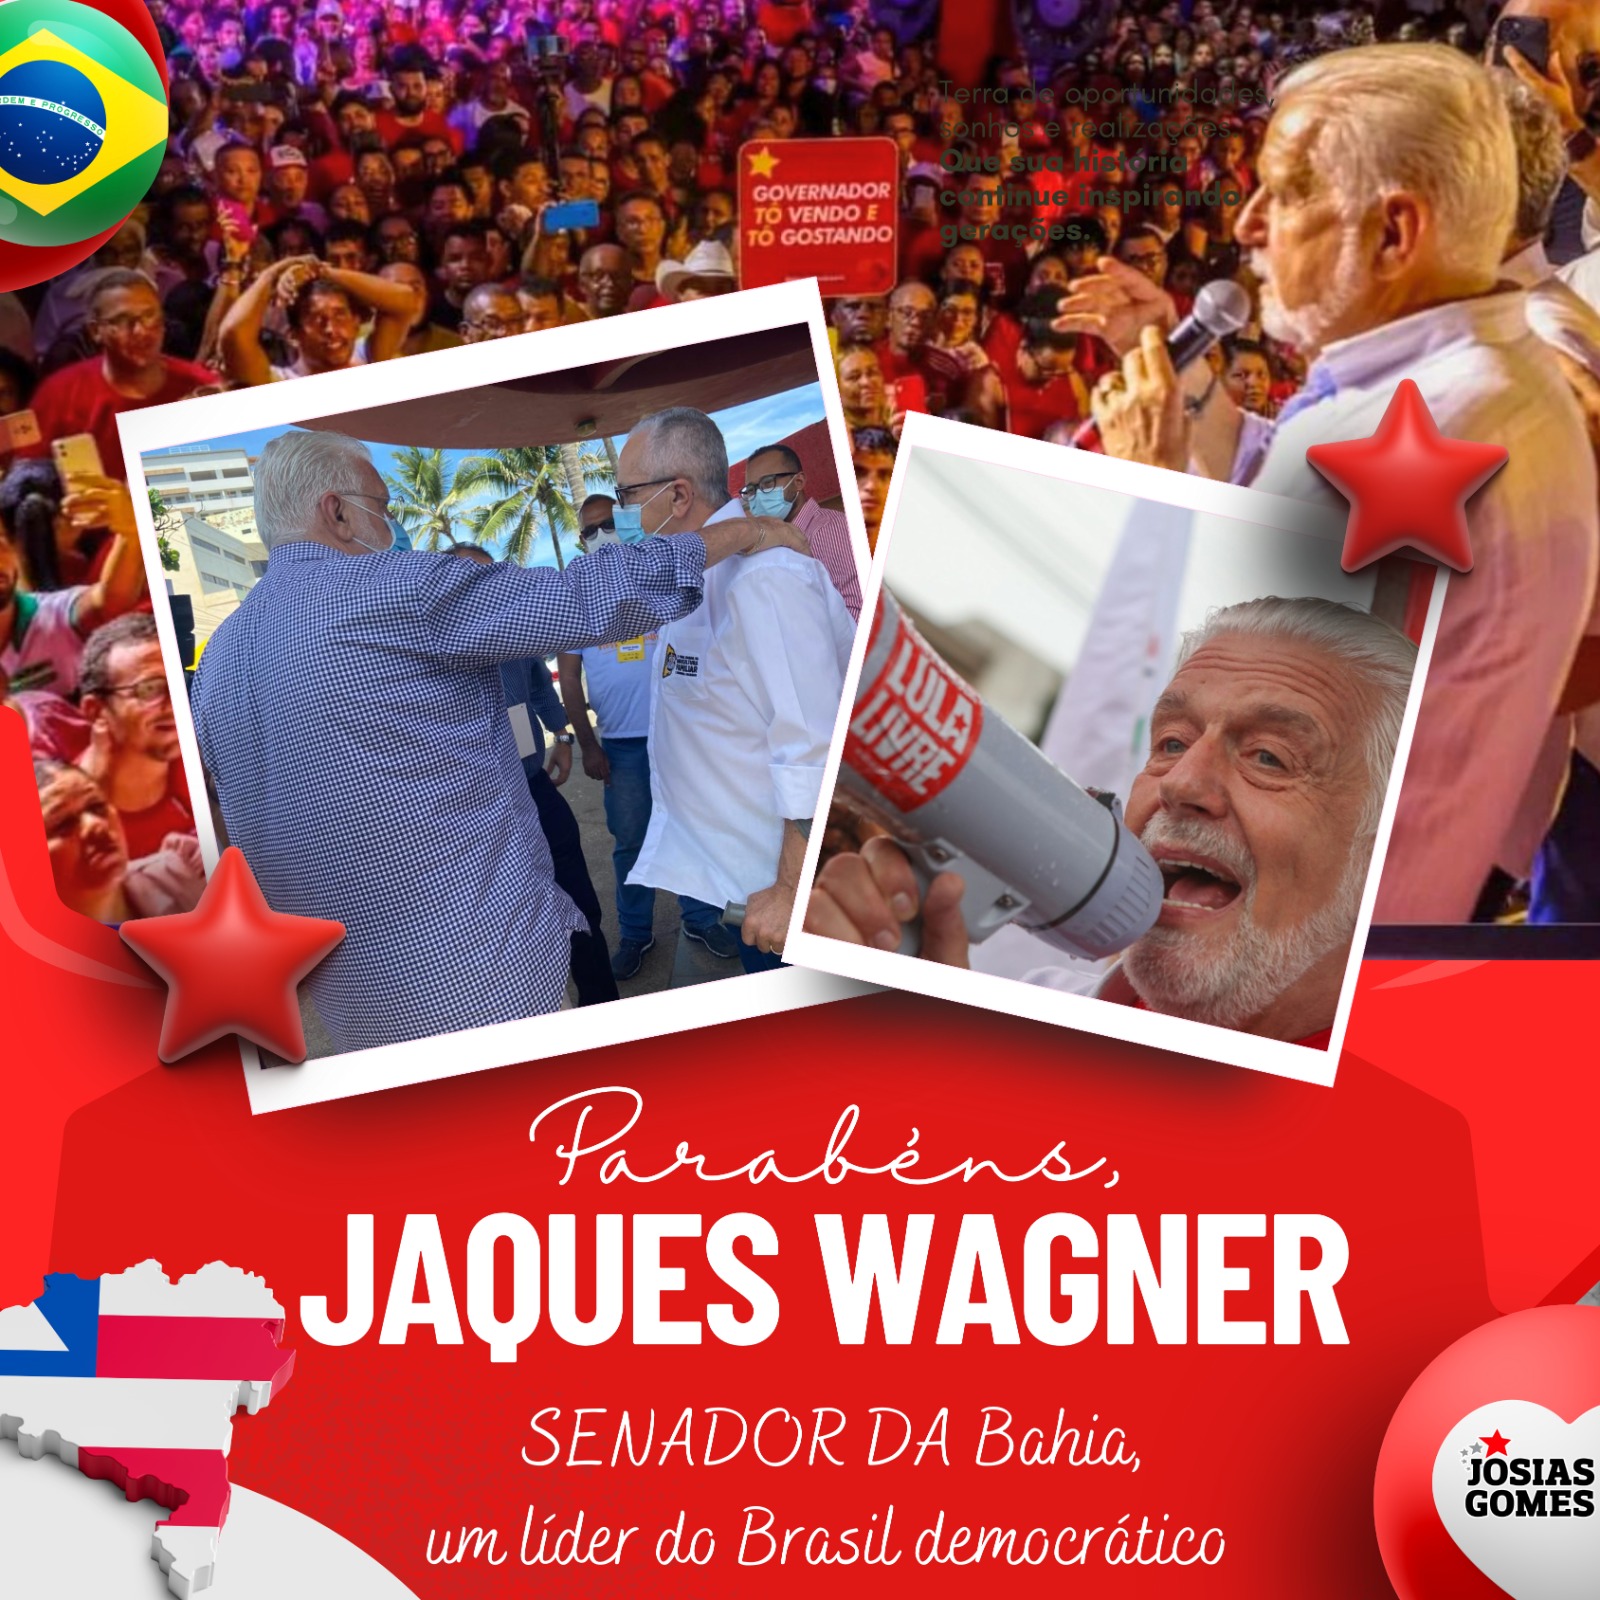 Parabéns, Companheiro Jaques Wagner!